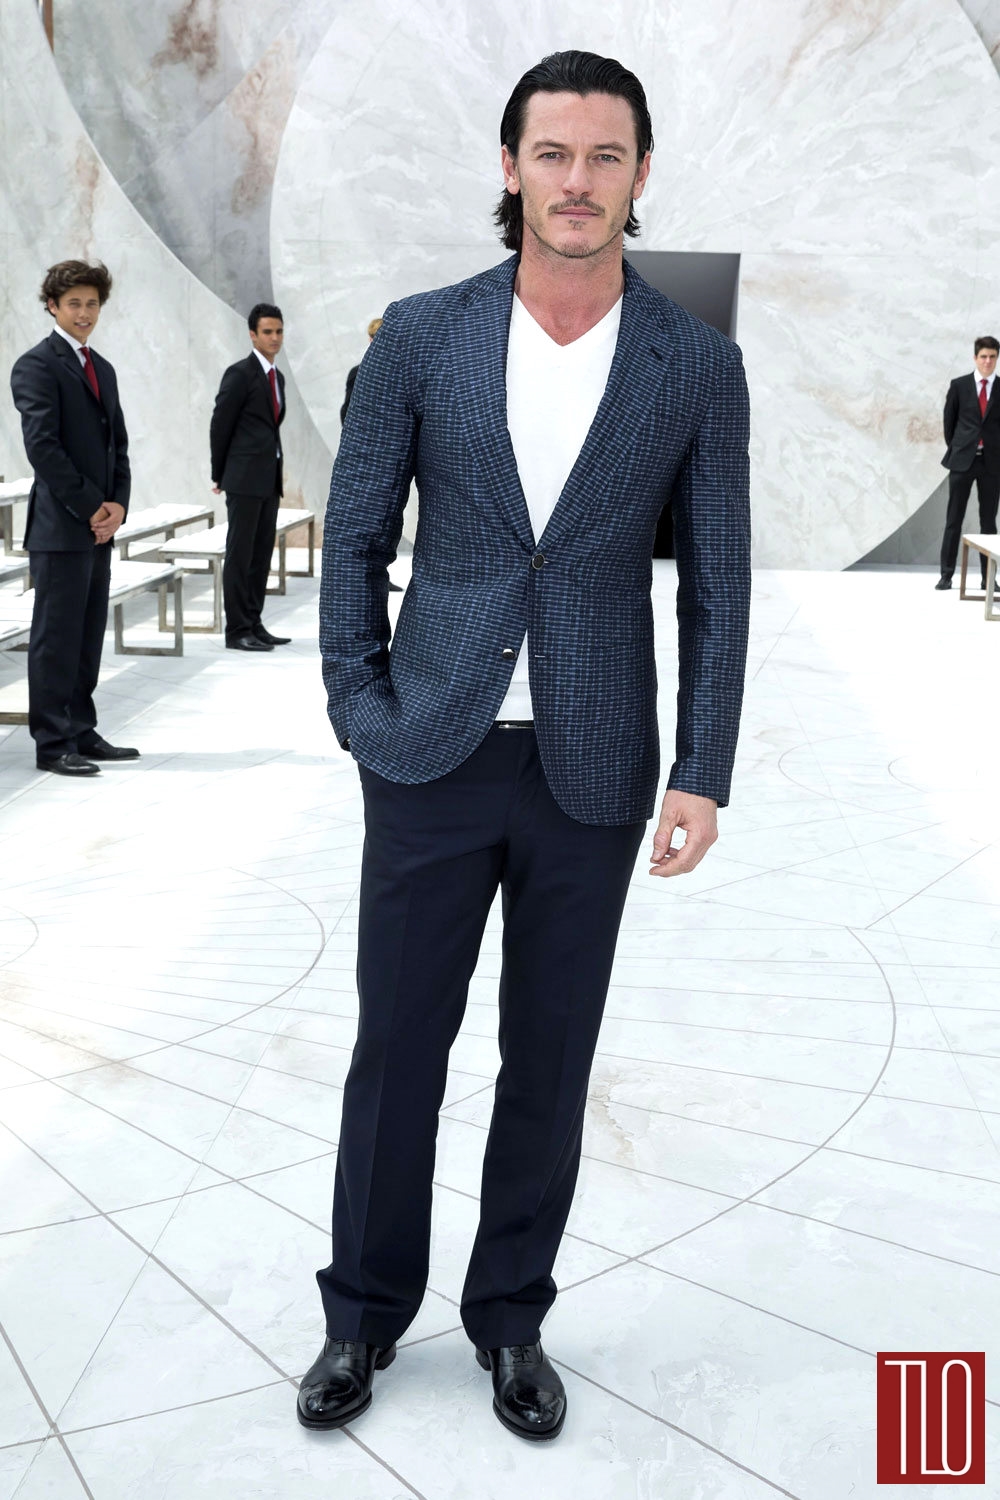 Luke-Evans-Louis-Vuitton-Fashion-Show-Spring-2015-Front-Row-Tom-Lorenzo-Site-TLO (1)